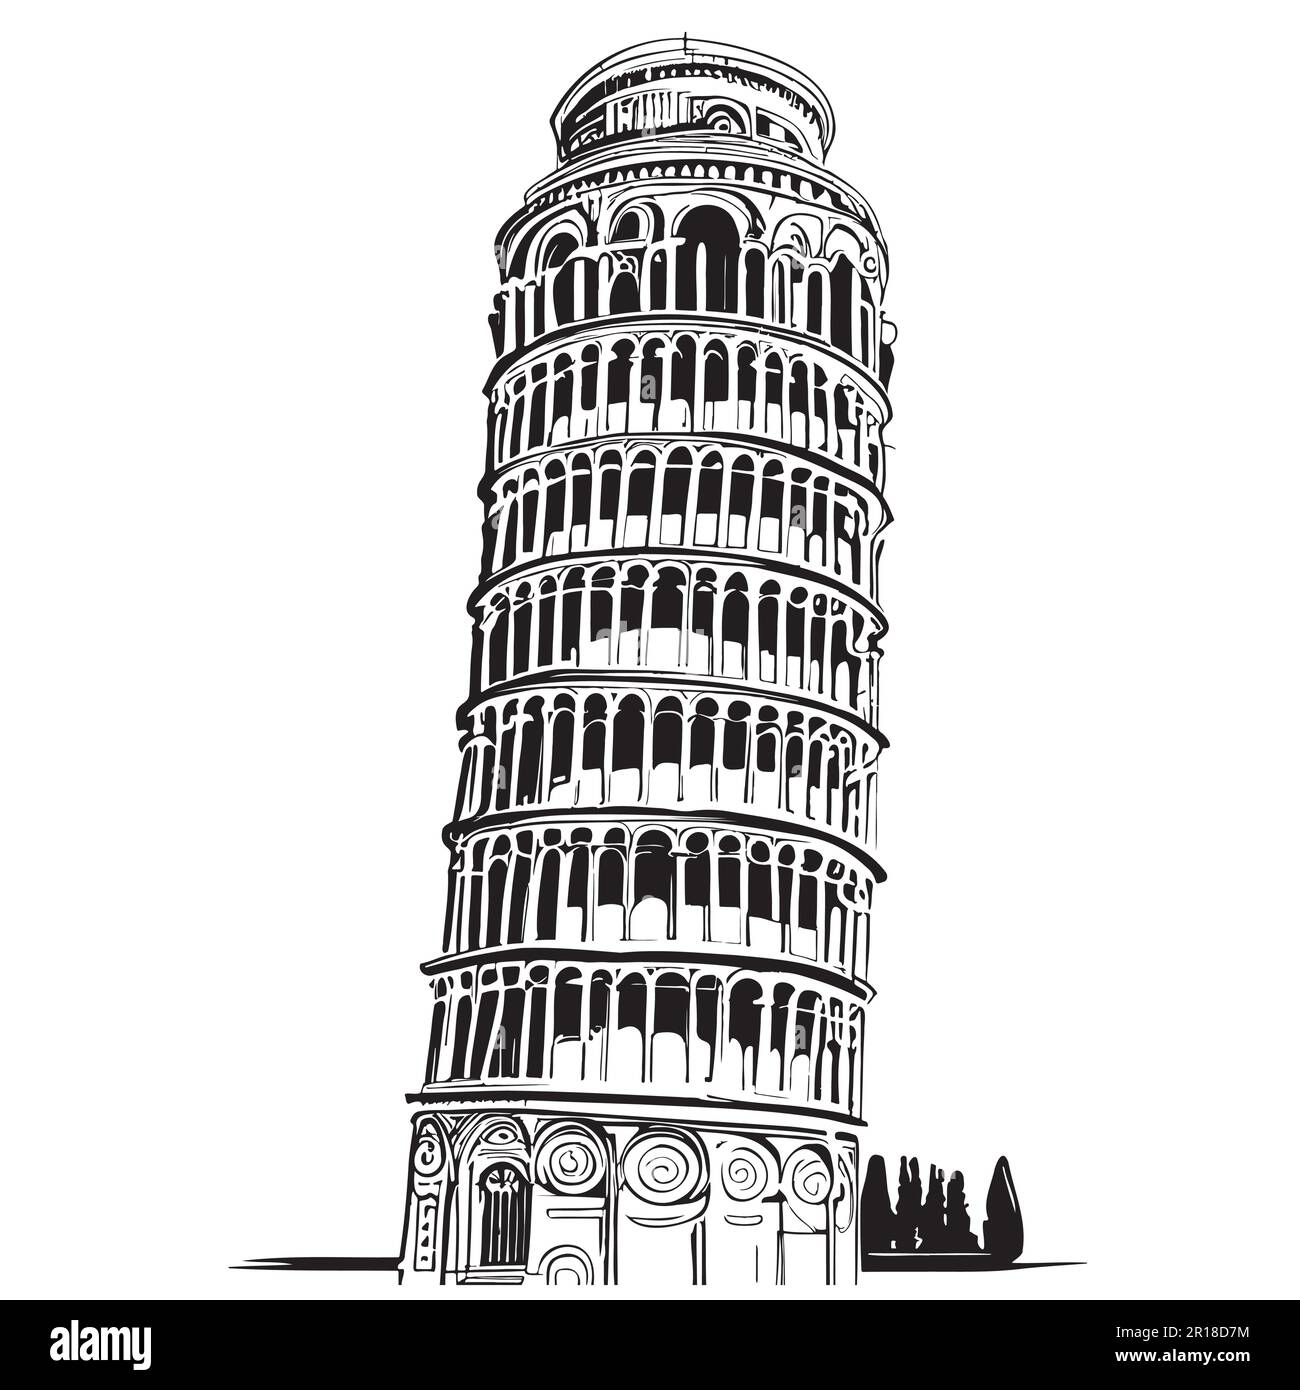 Schiefer Turm von Pisa abstrakte Zeichnung von Hand gezeichnet in Doodle-Stil Illustration Stock Vektor